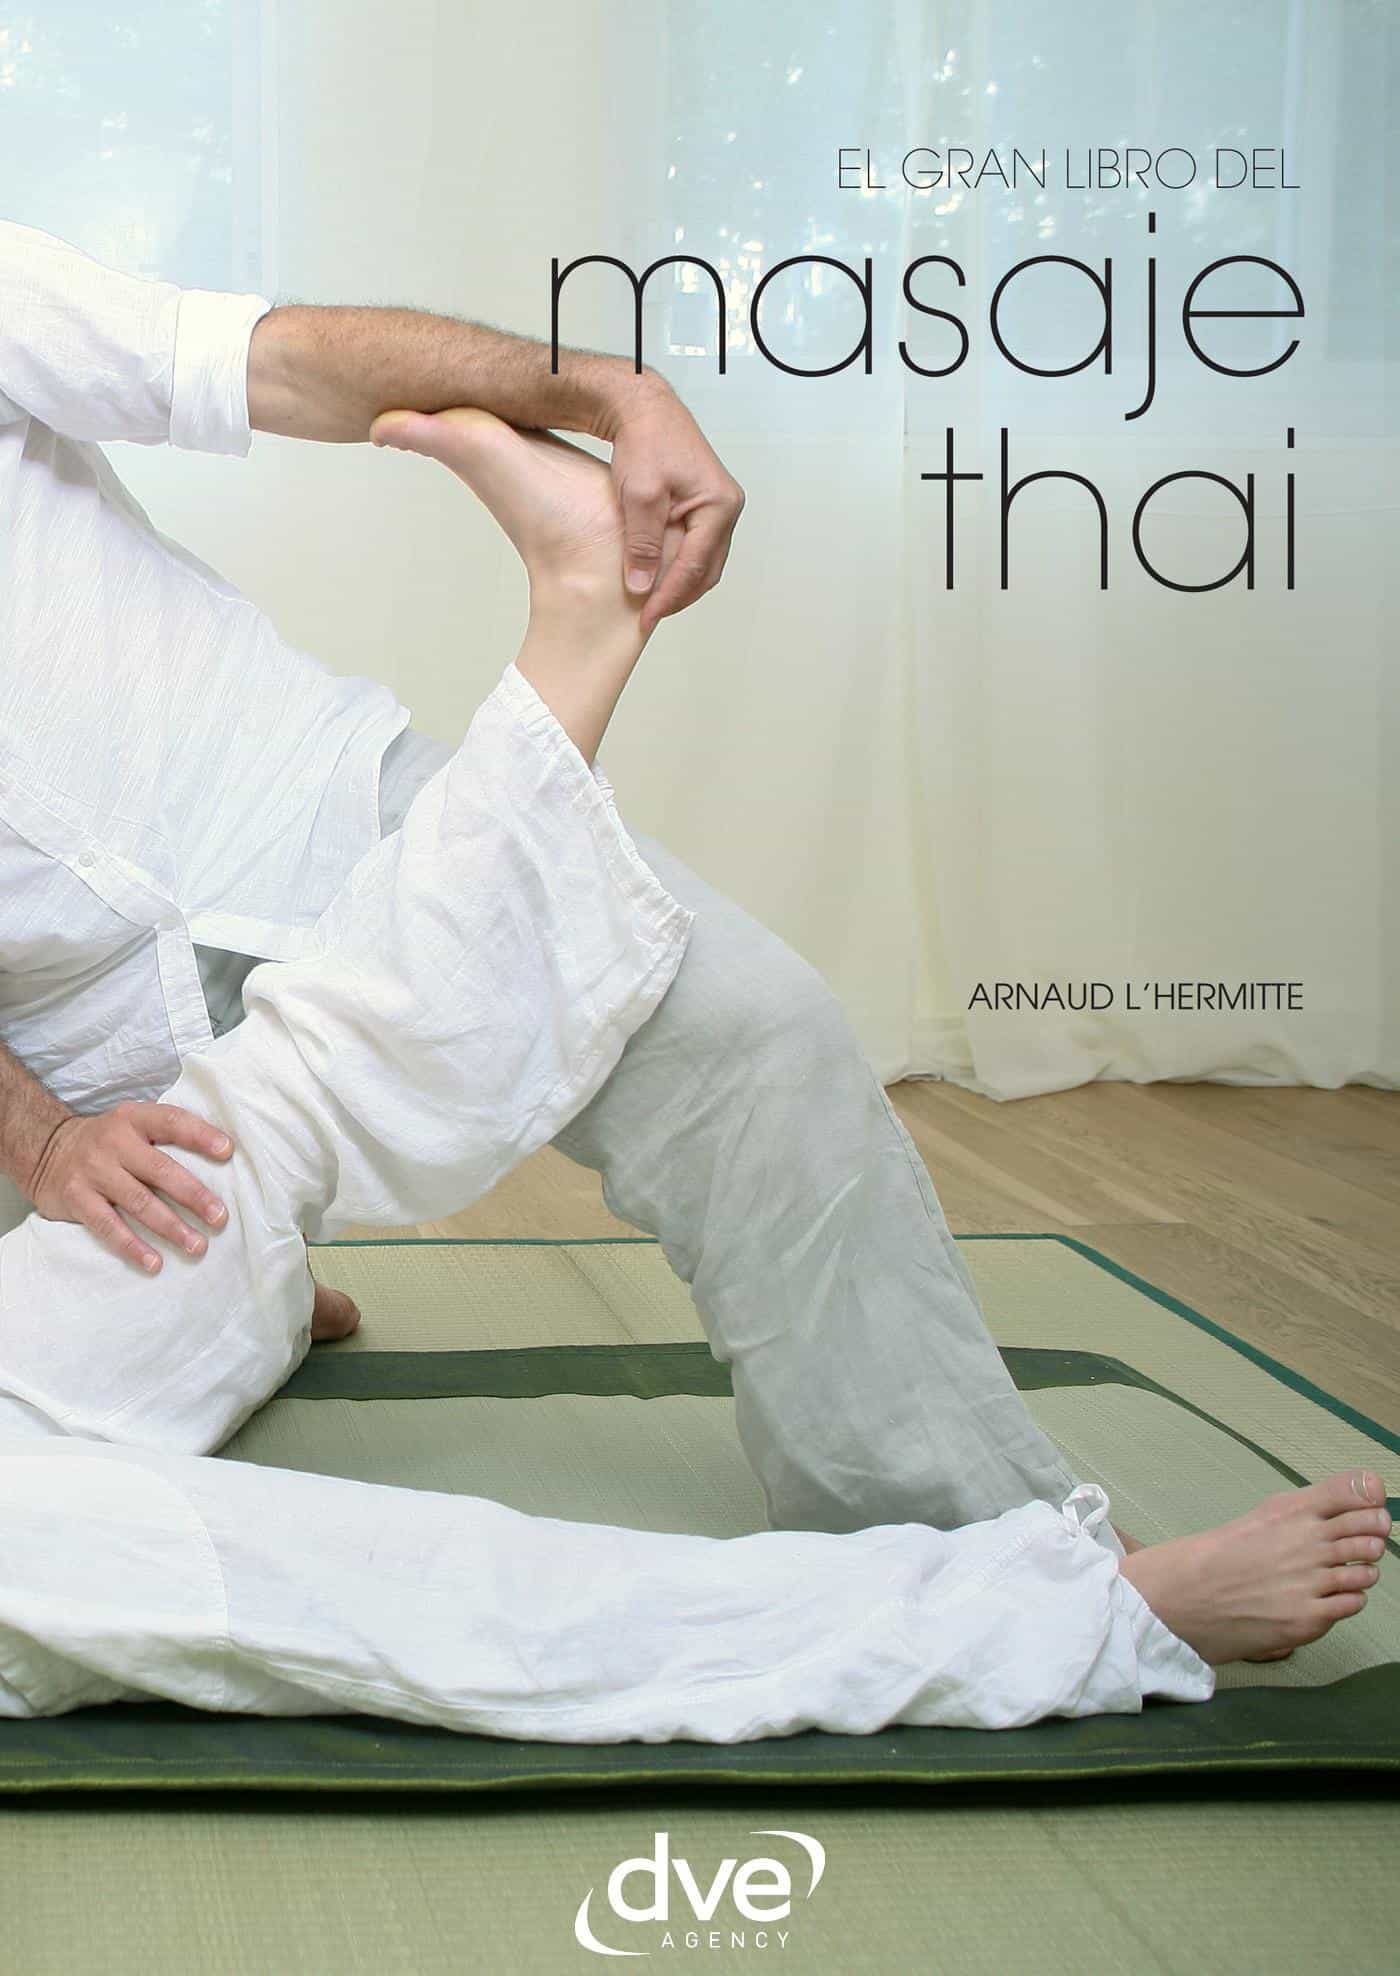 Descargar Libro De Yoga Pdf Book